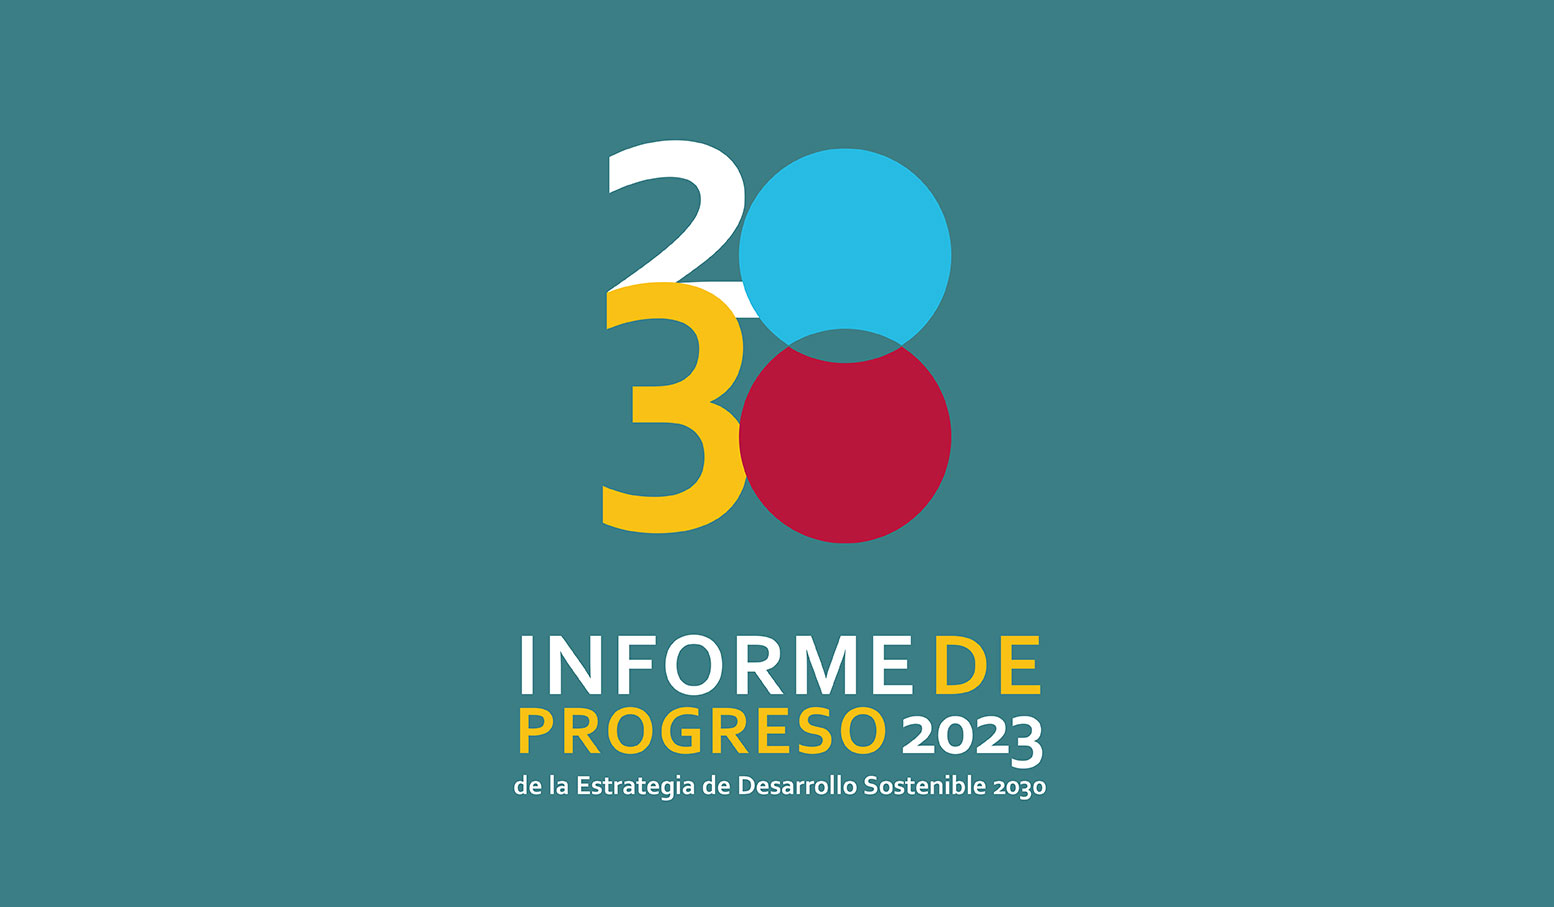 ‘Informe de progreso 2023’ de la estrategia de desarrollo sostenible 2030